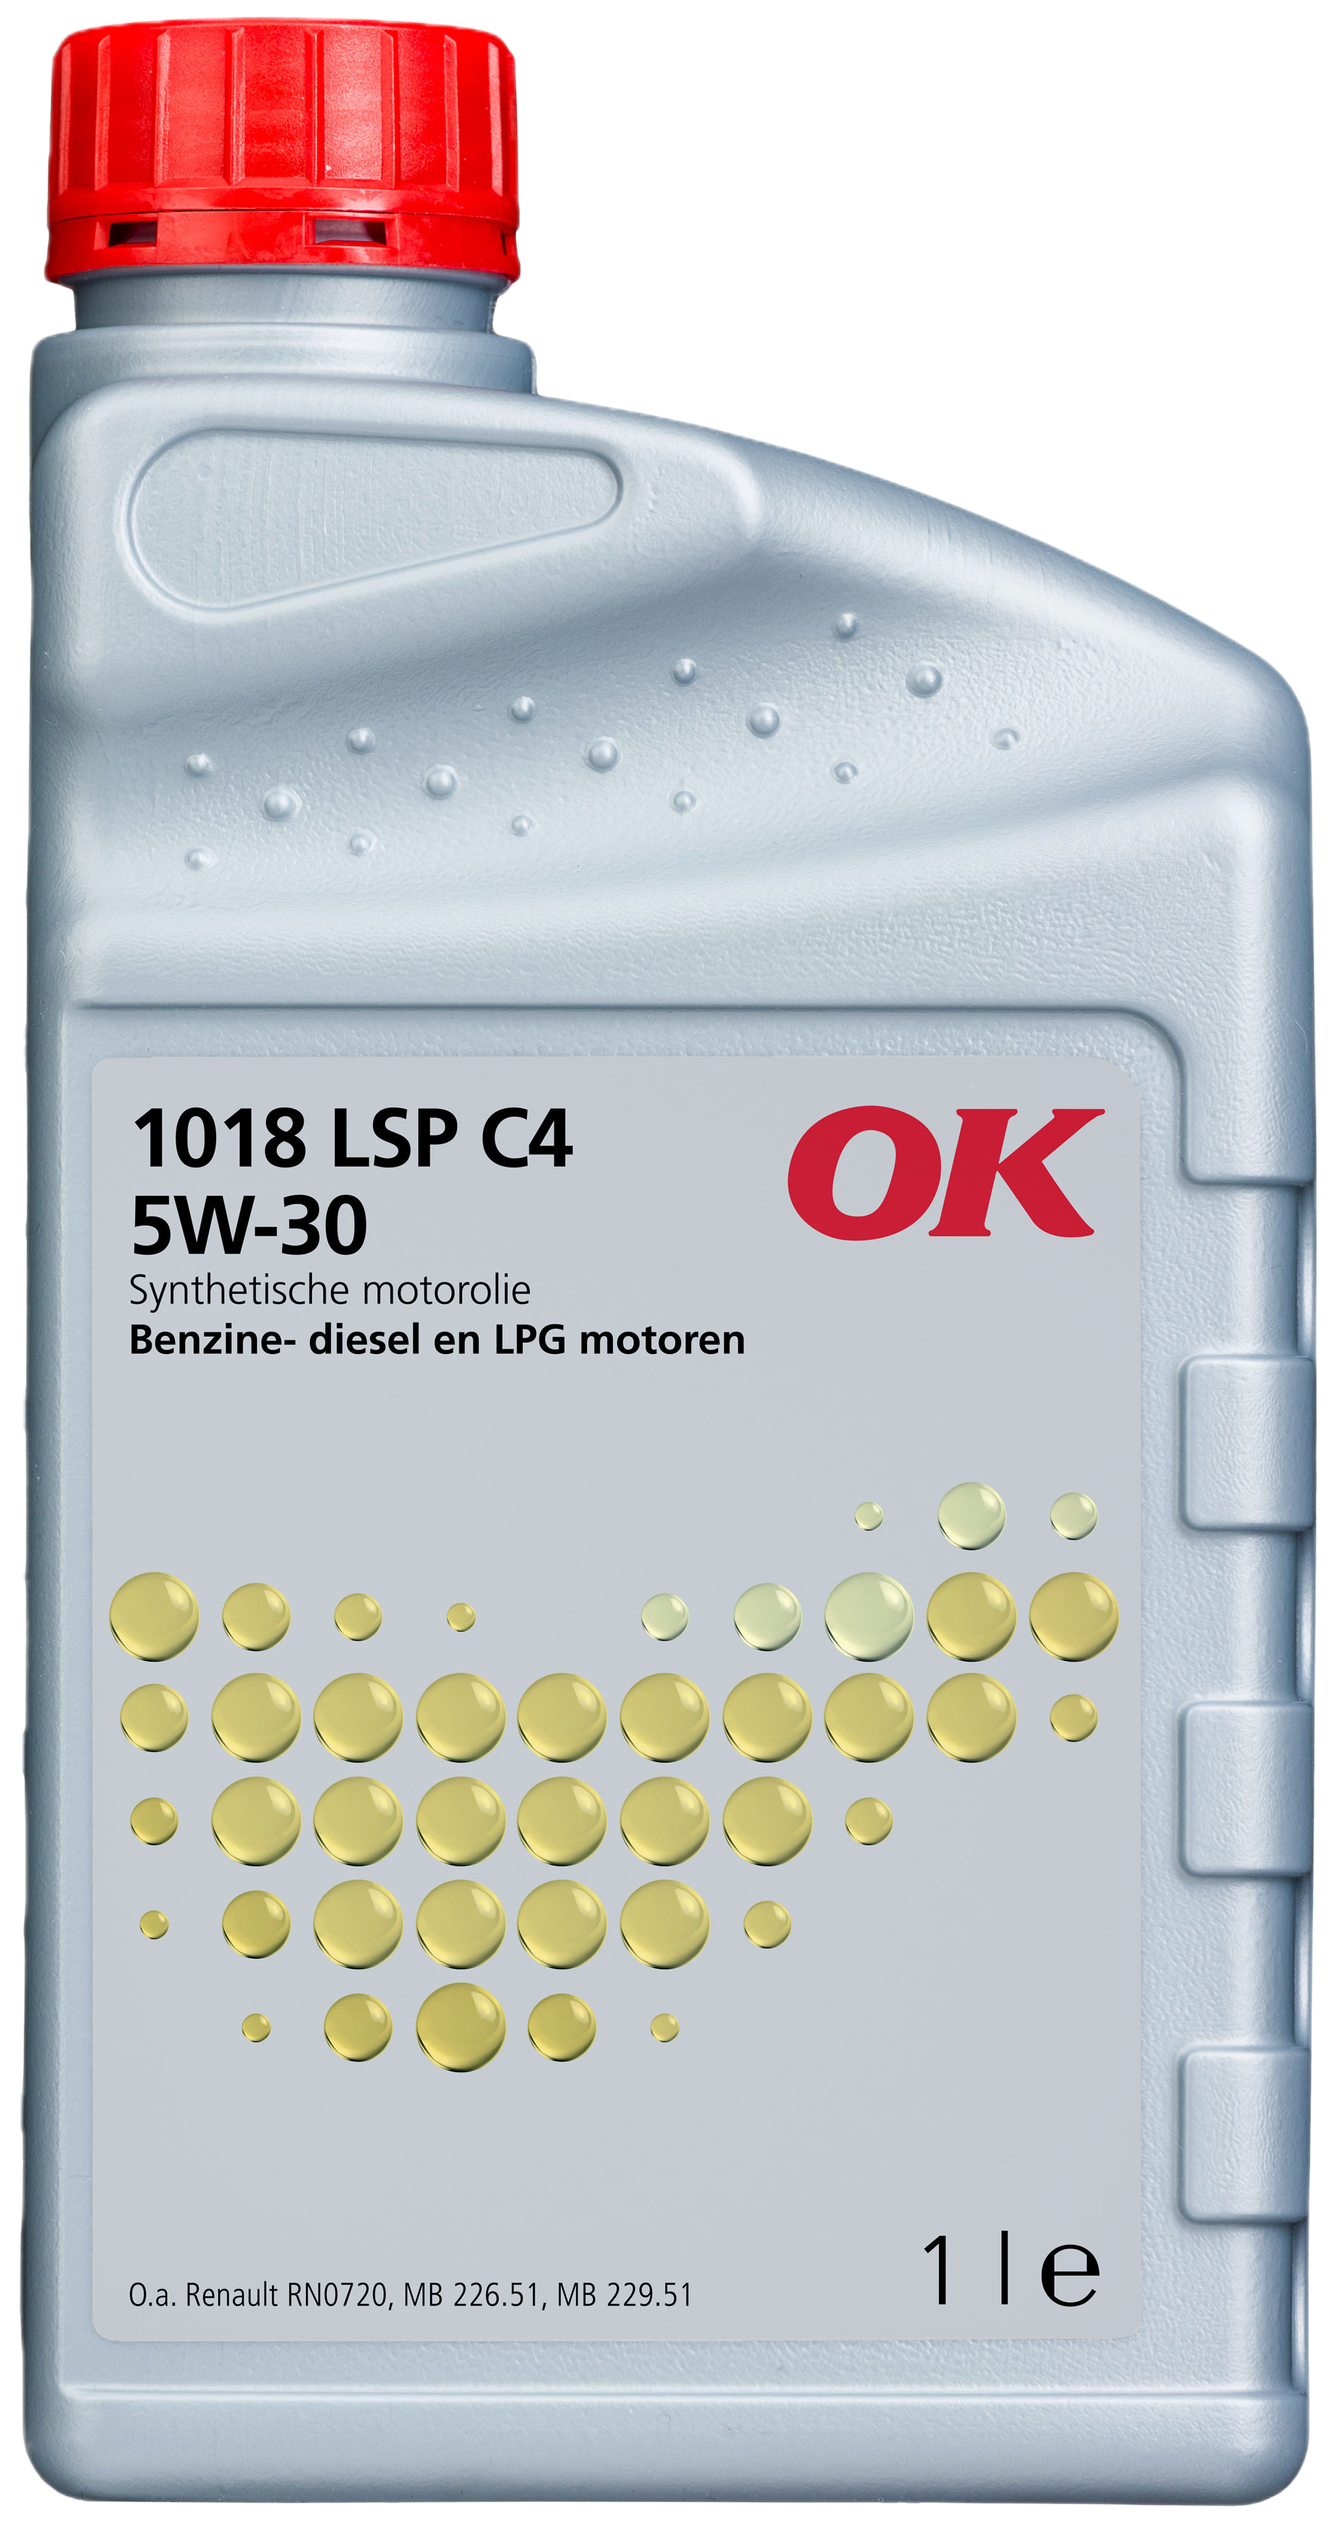 O2018-1 OK 1018 LSP C4 5W-30 is een brandstofbesparende, universele motorolie, ontwikkeld volgens de recentste technieken, gebaseerd op speciaal geselecteerde synthetische basisoliën.